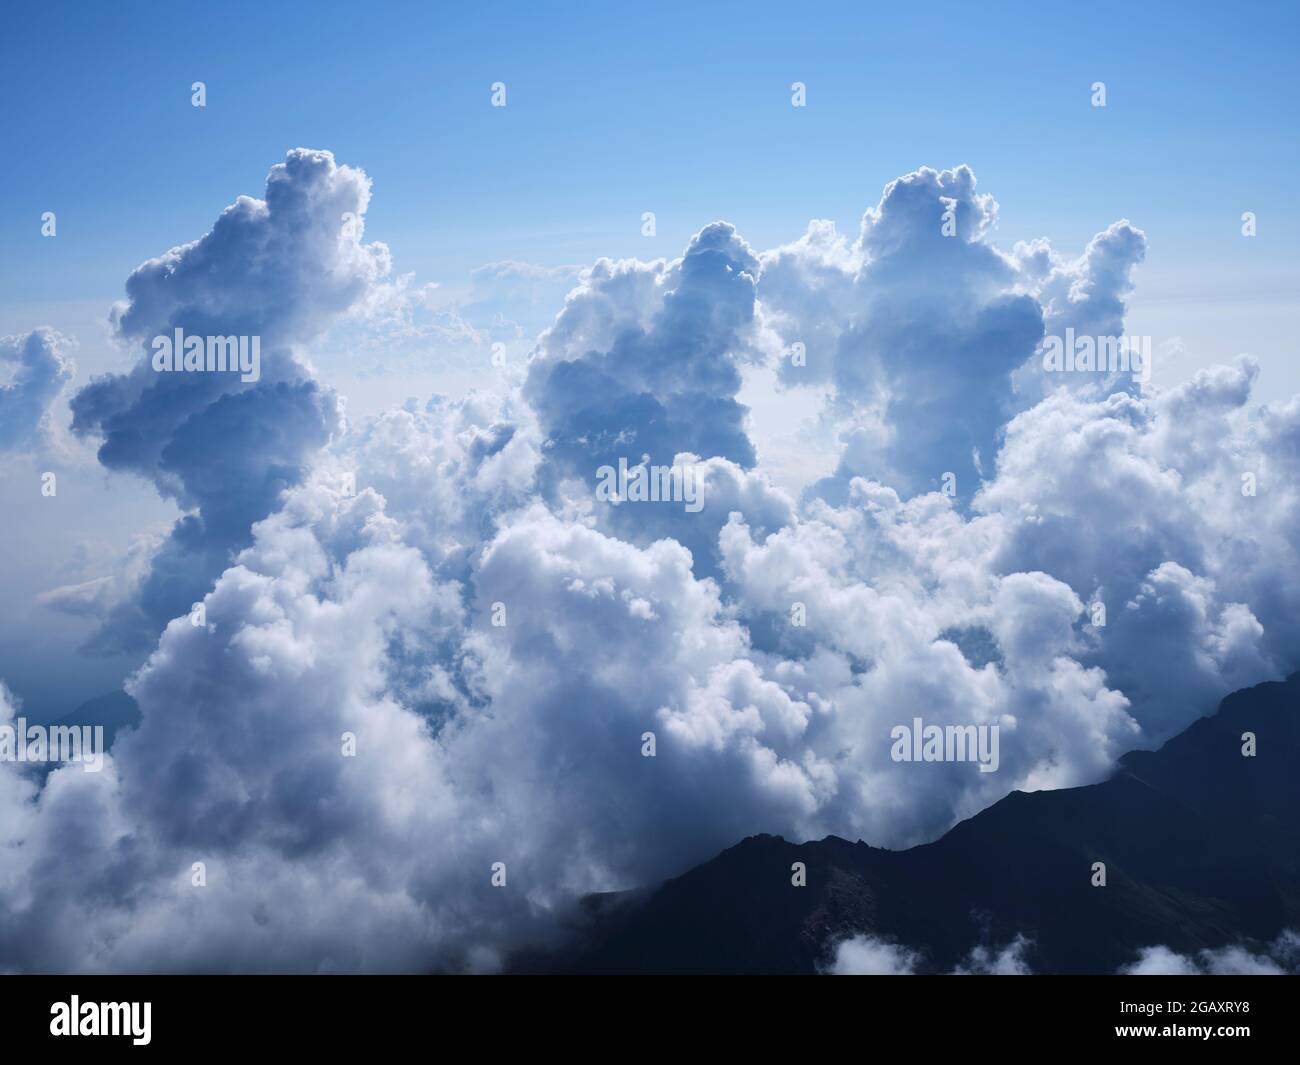 VISTA AEREA. Torreggianti nubi di cumuli che raggiungono circa 4000 metri sopra la Pianura Padana ad est del Monte viso. Provincia di Cuneo, Piemonte, Italia. Foto Stock